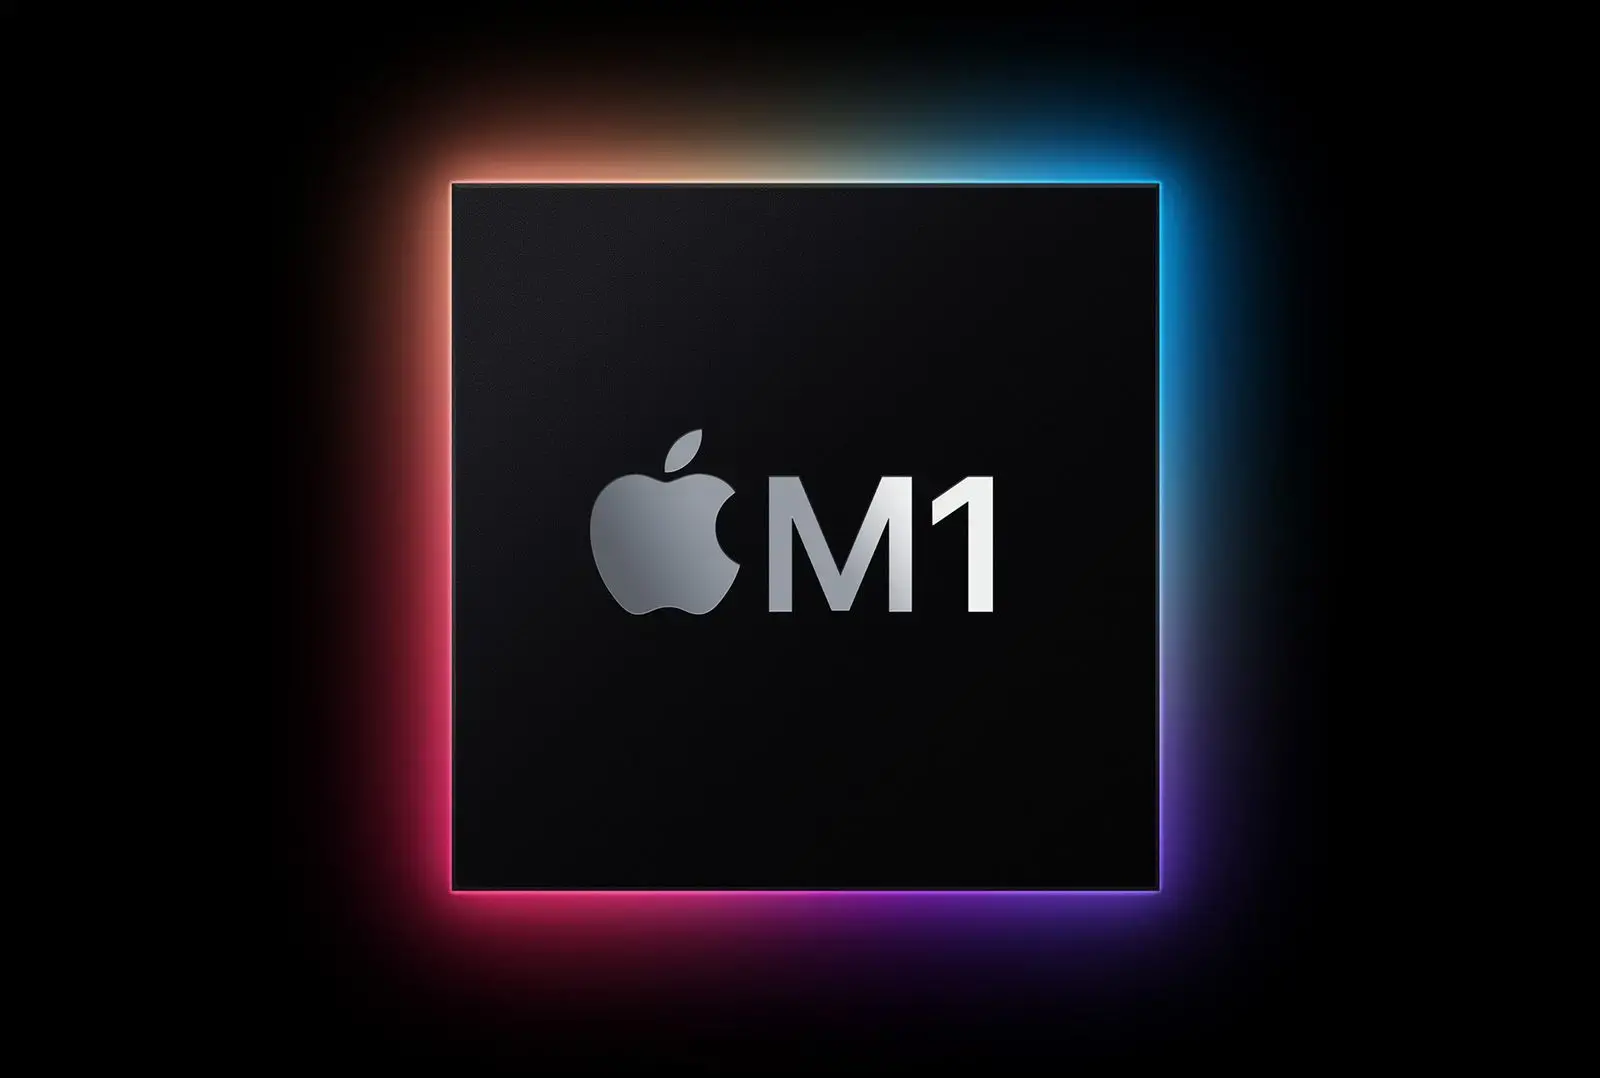 Logo for Apple's M1 chip